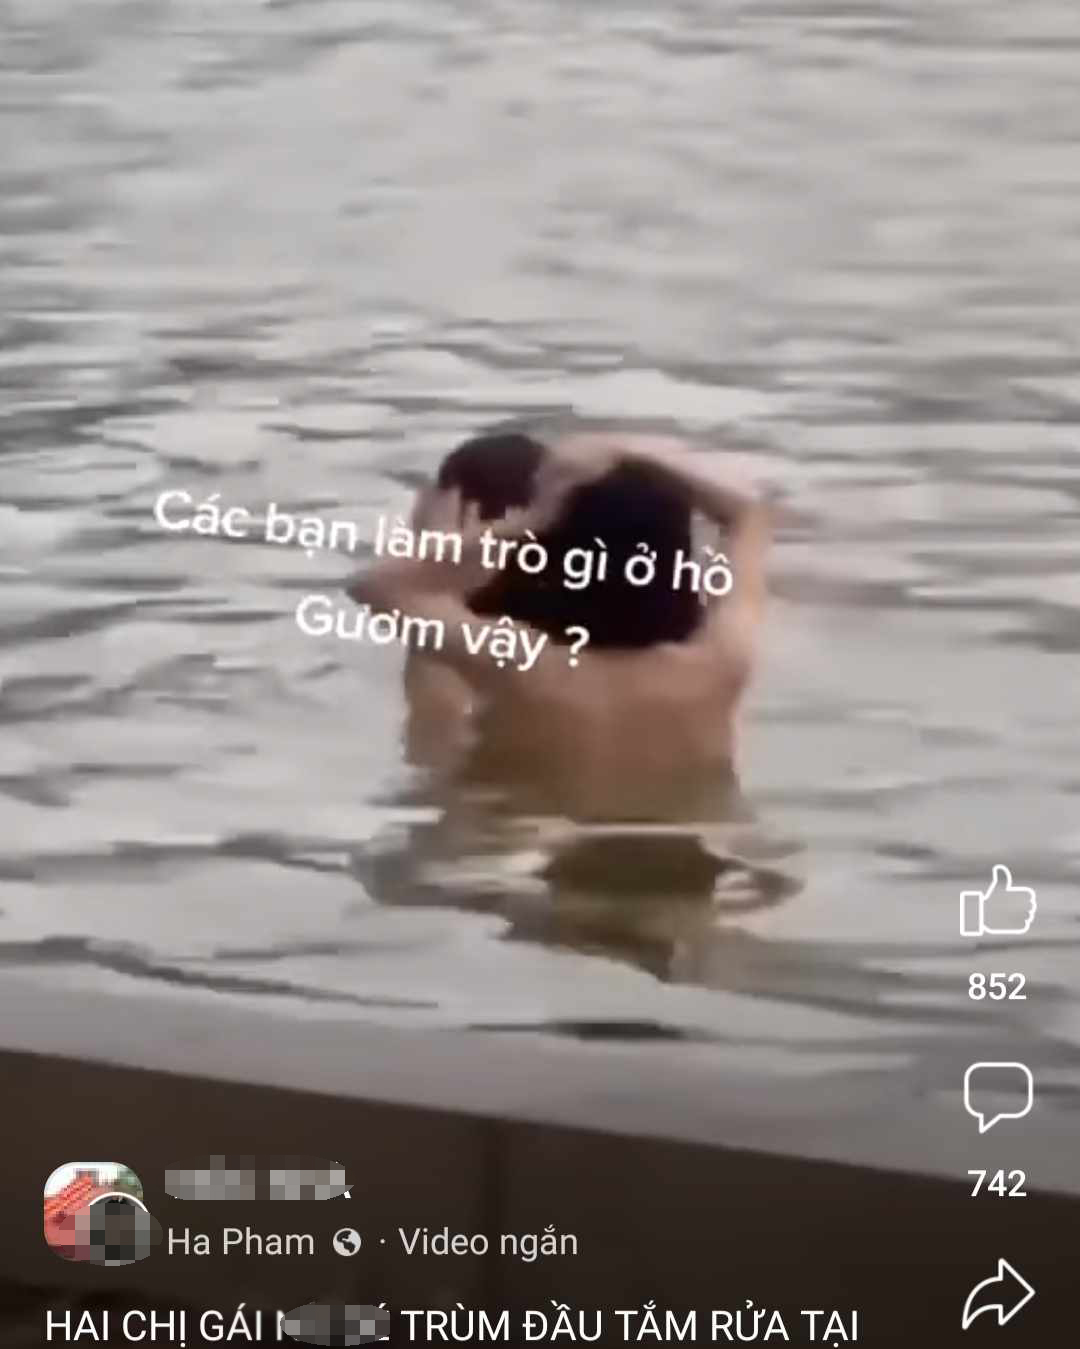 Đã xác định được 2 người “tắm tiên” tại Hồ Gươm - 1